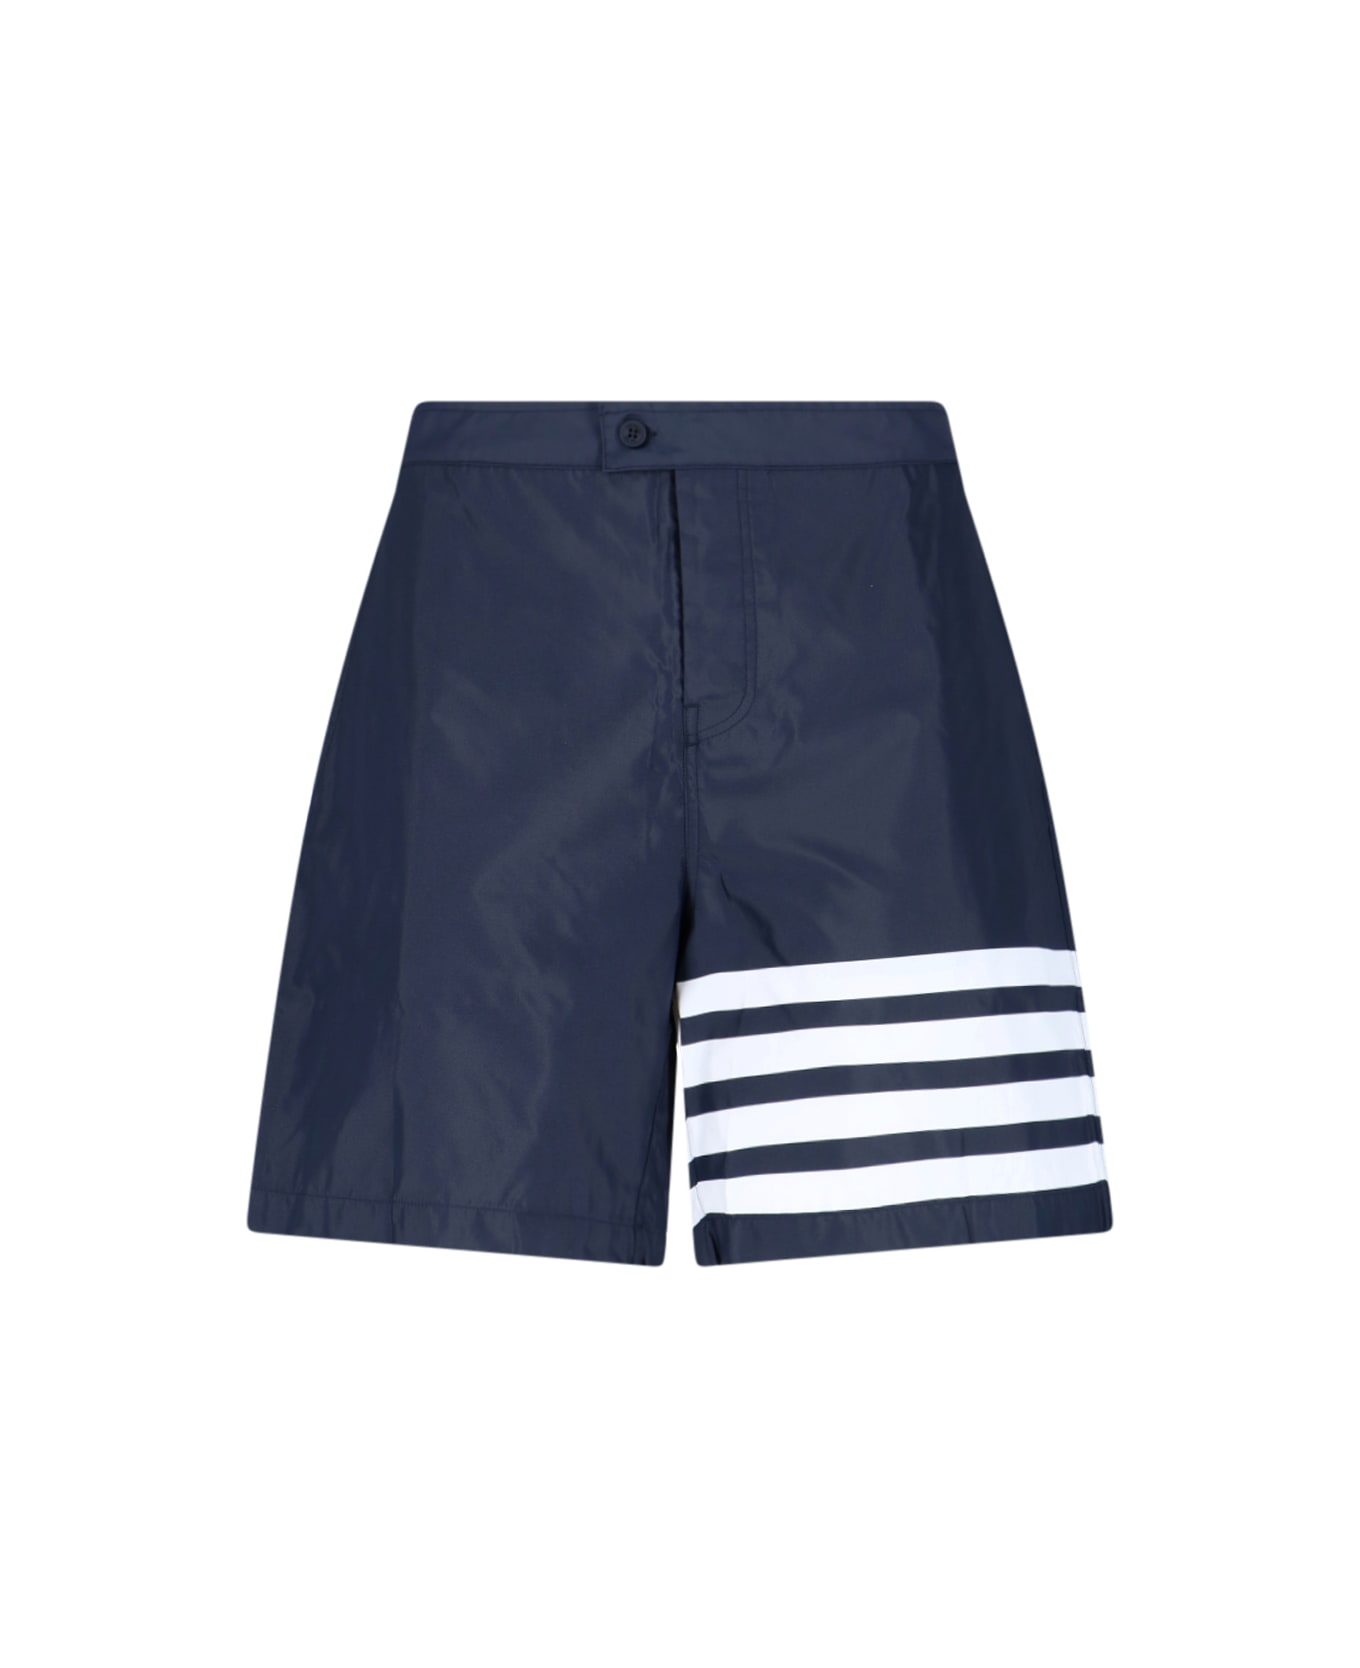 Thom Browne 4-bar Board Shorts - Blue 水着